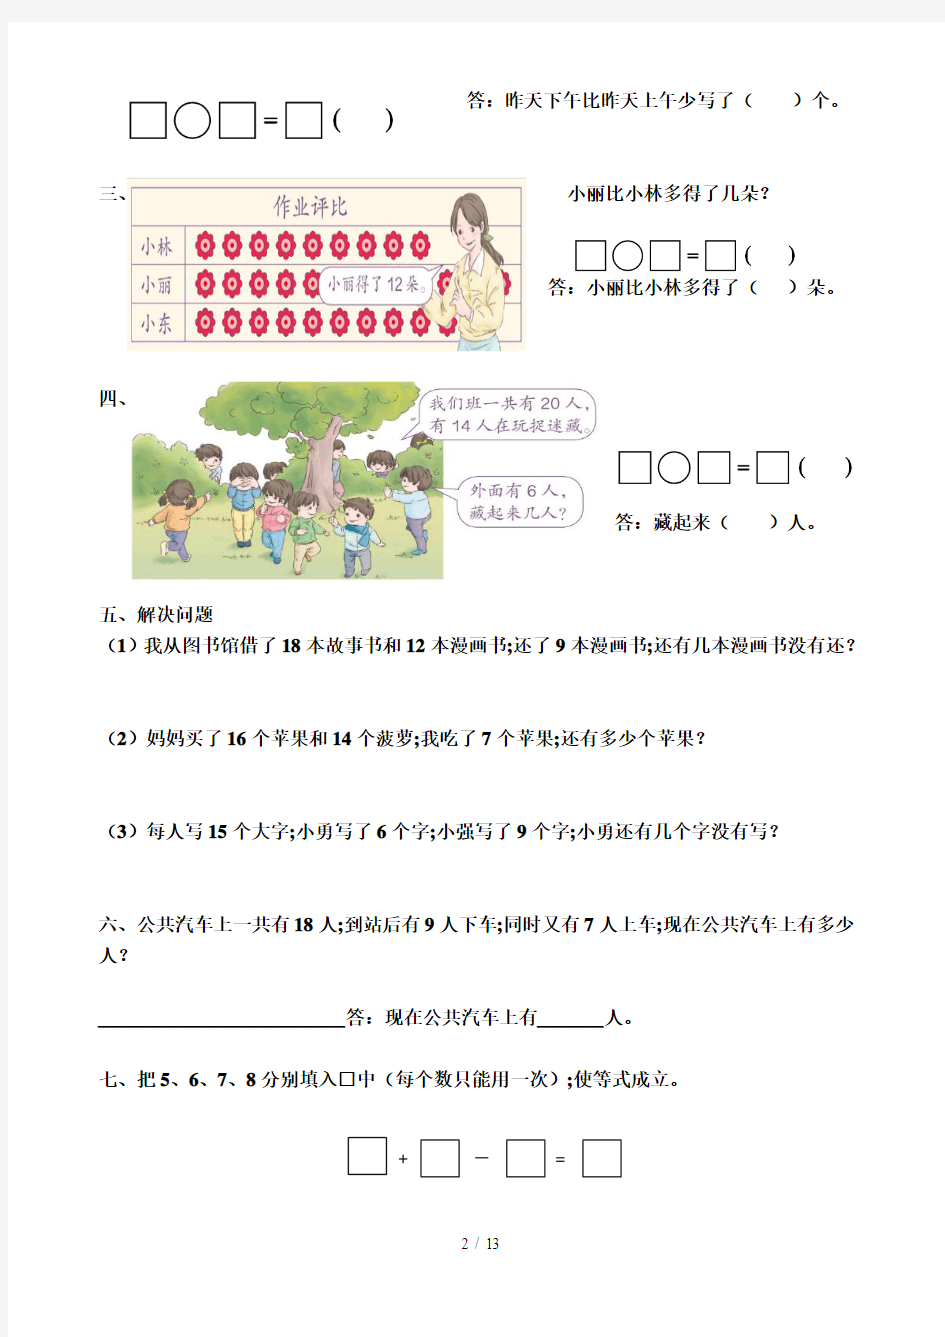 【小学数学】一年级数学下册(1-7单元)错题集完整版